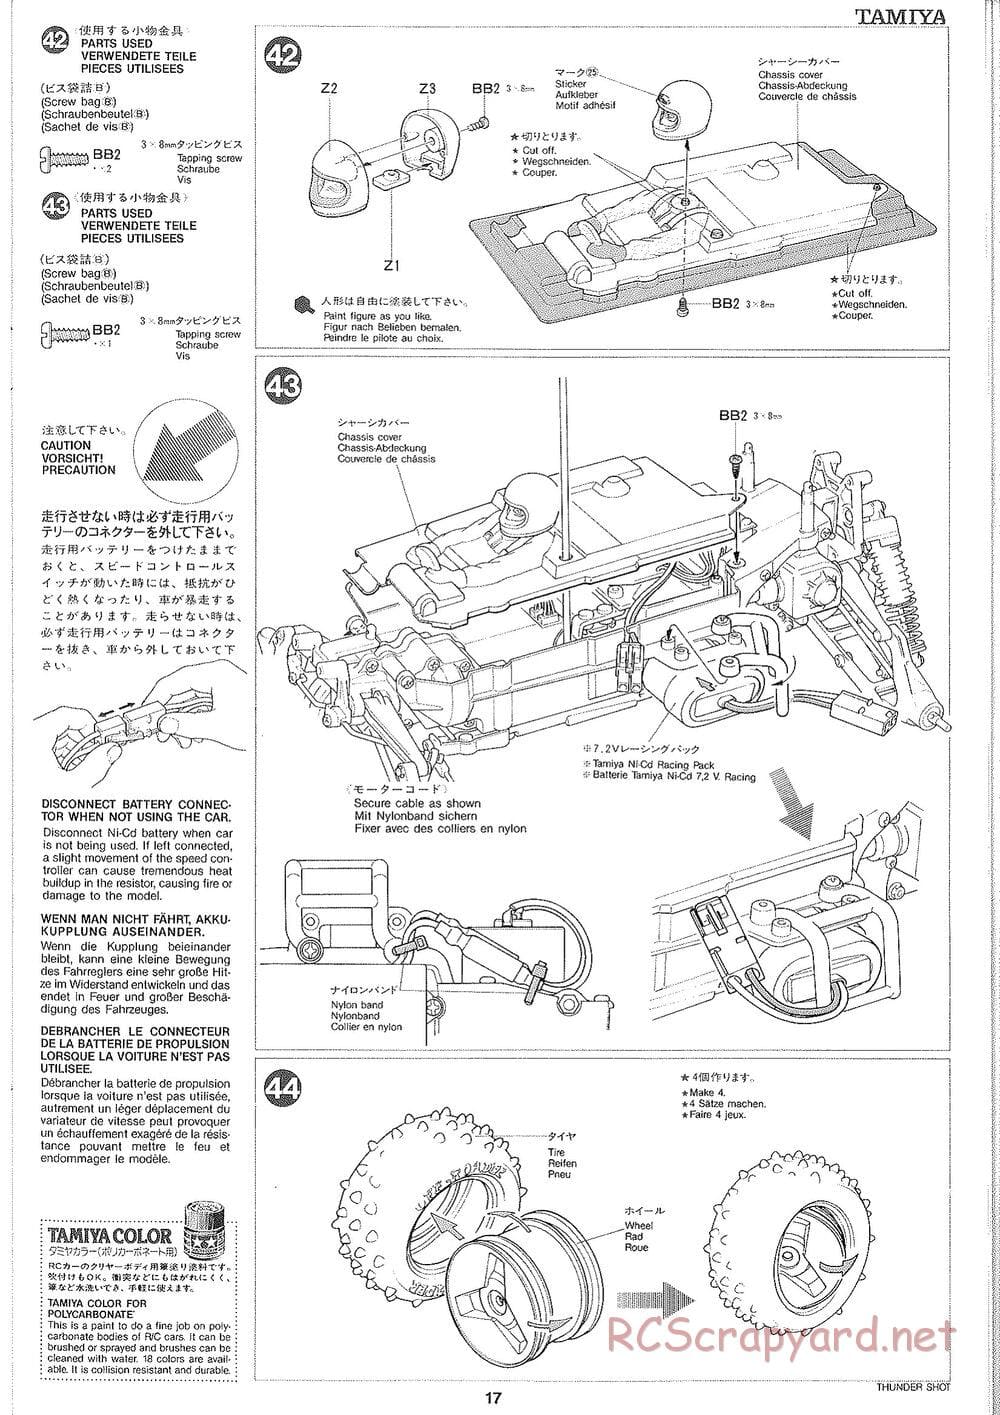 Tamiya - Thunder Shot - TS1 Chassis - Manual - Page 18